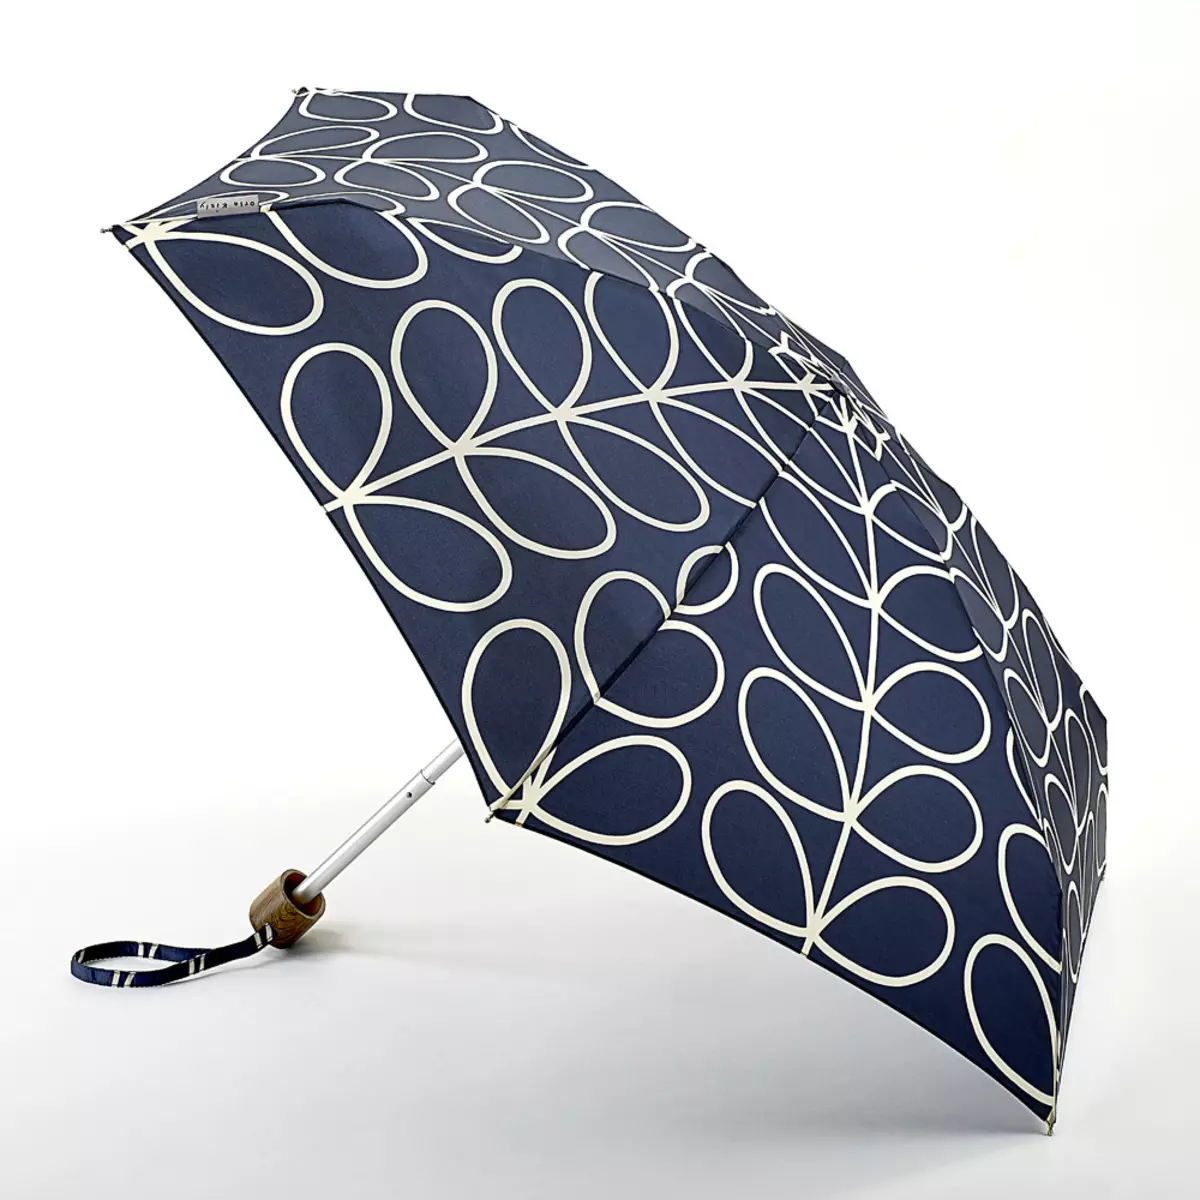 Fulton Umbrellas (53 fotos): skaaimerken fan modellen en resinsjes oer Umbrellas 15229_5